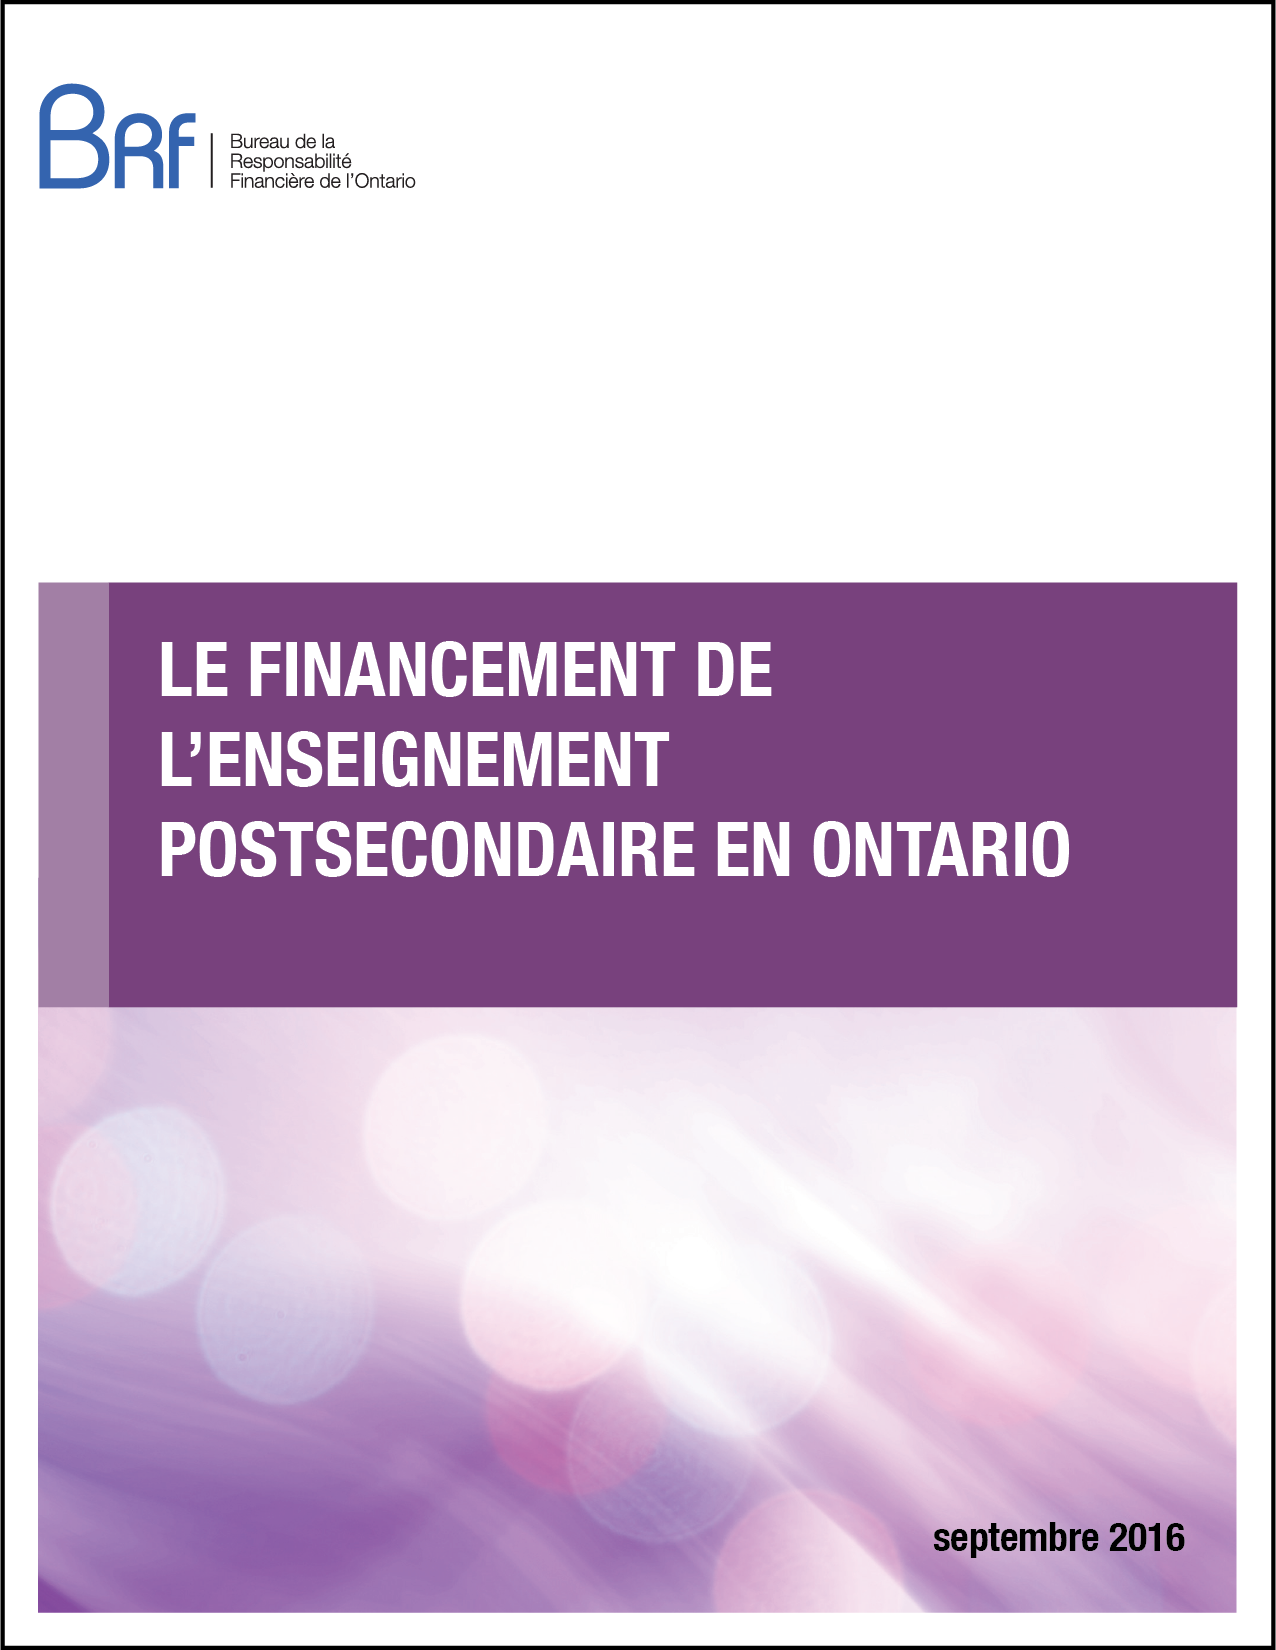 Le financement de l’enseignement postsecondaire en Ontario